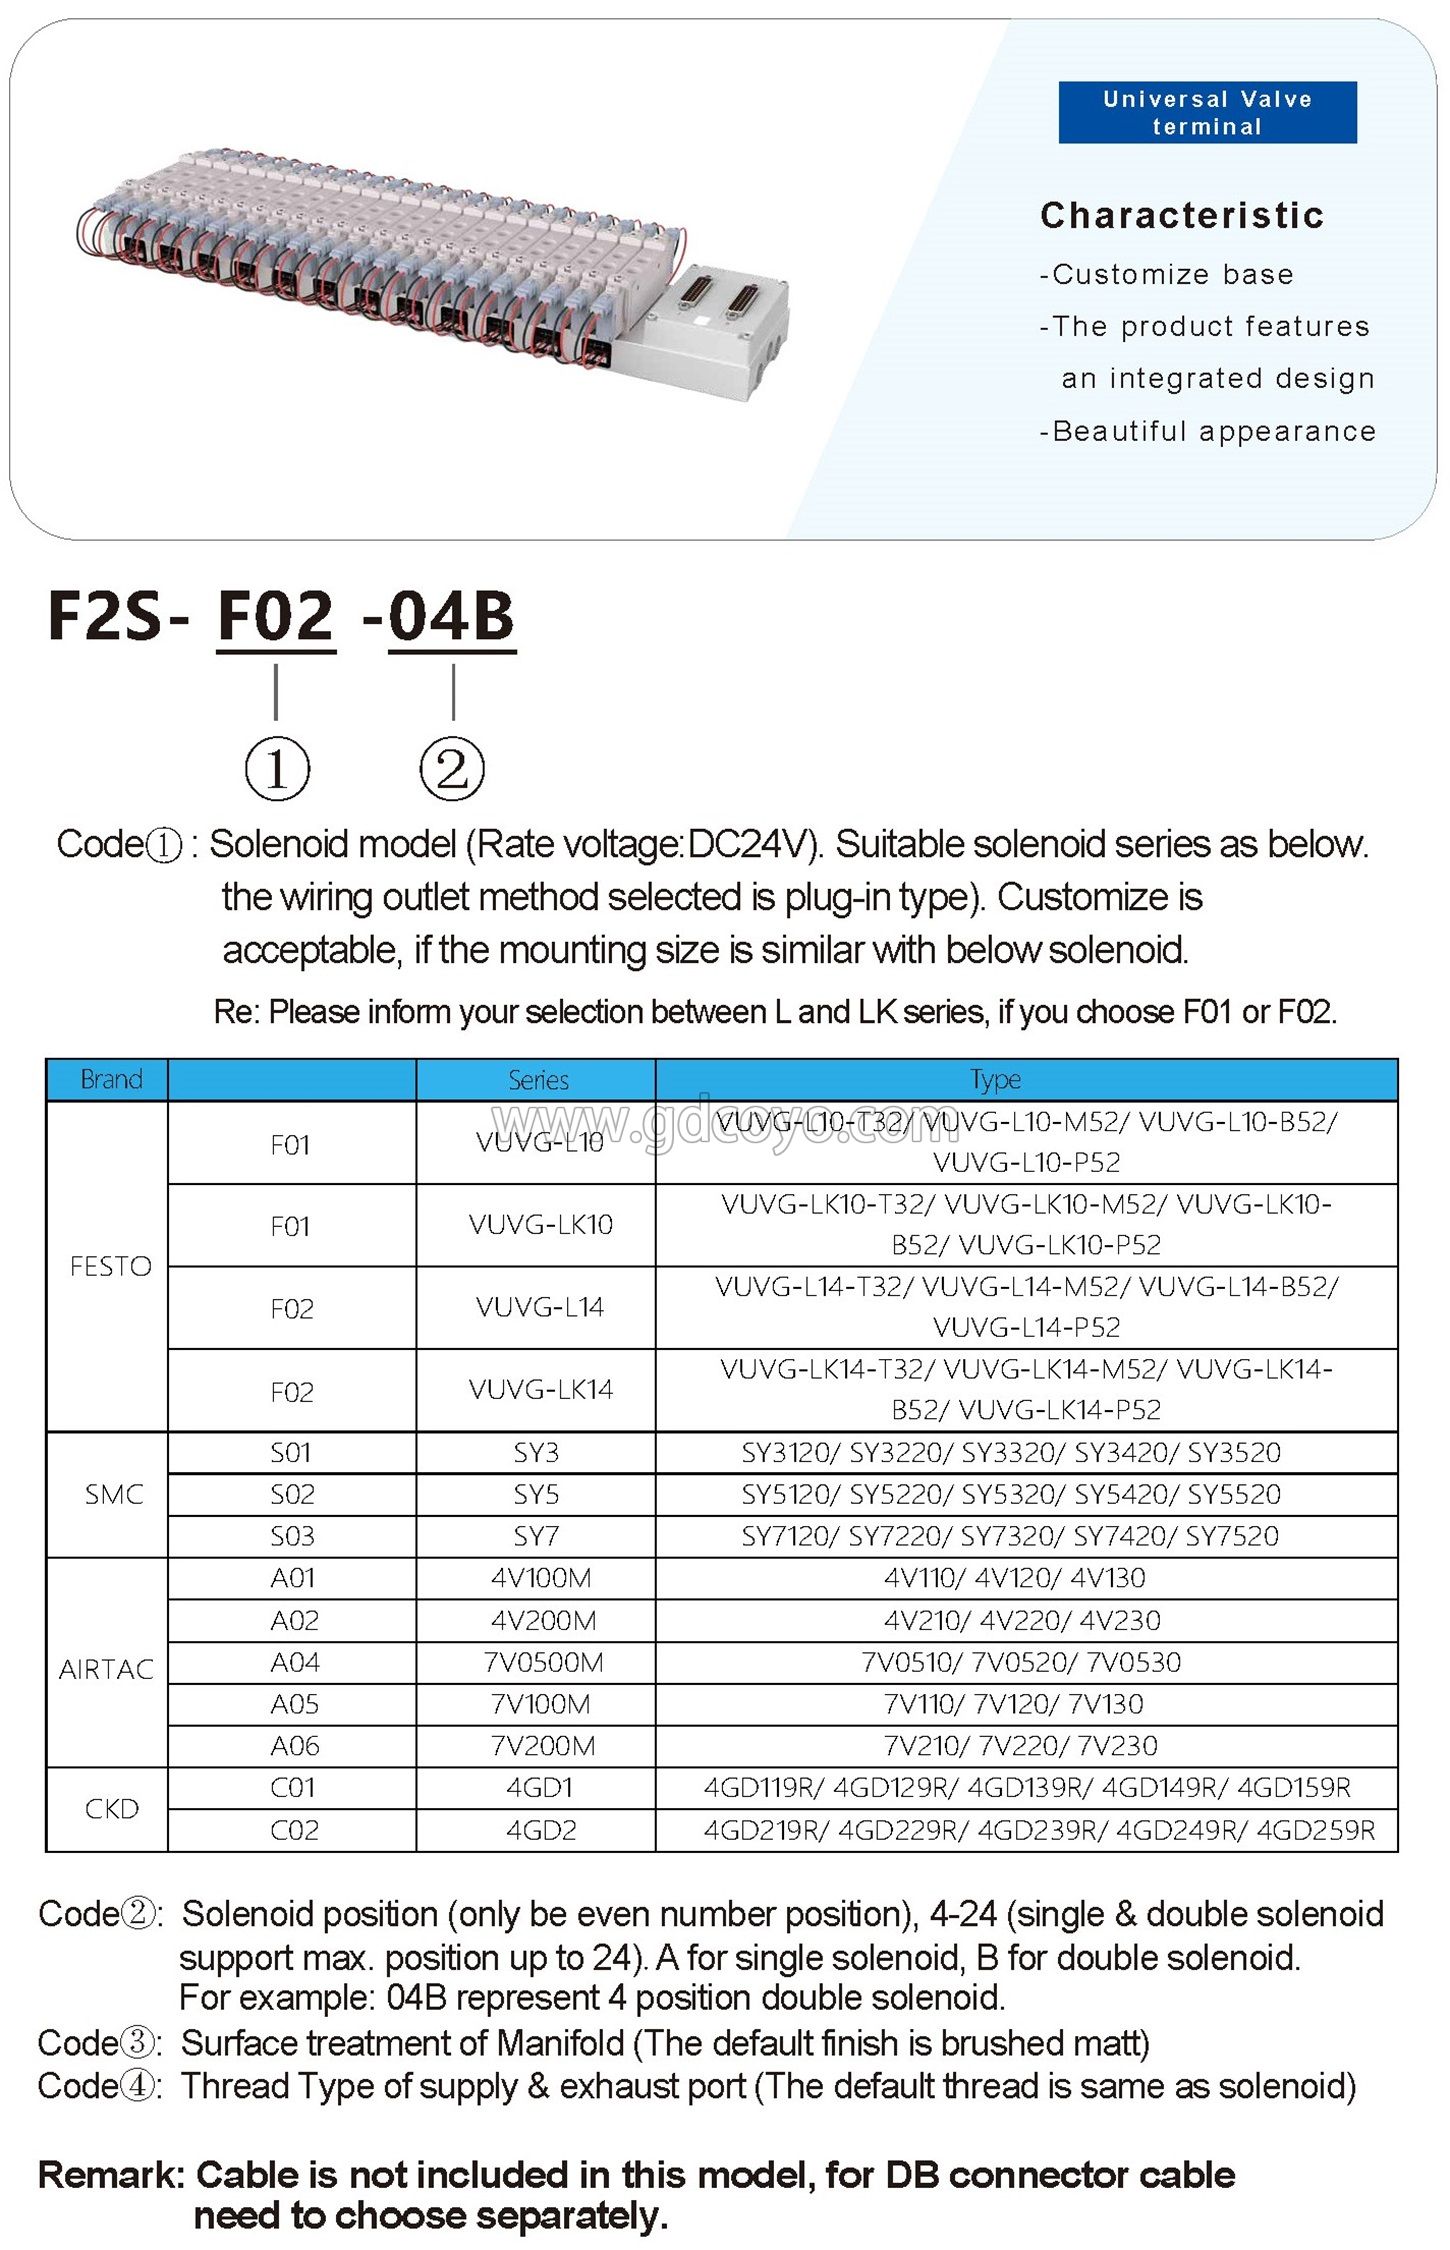 F2S-F02 Multi-Pin Plug Valve Terminal